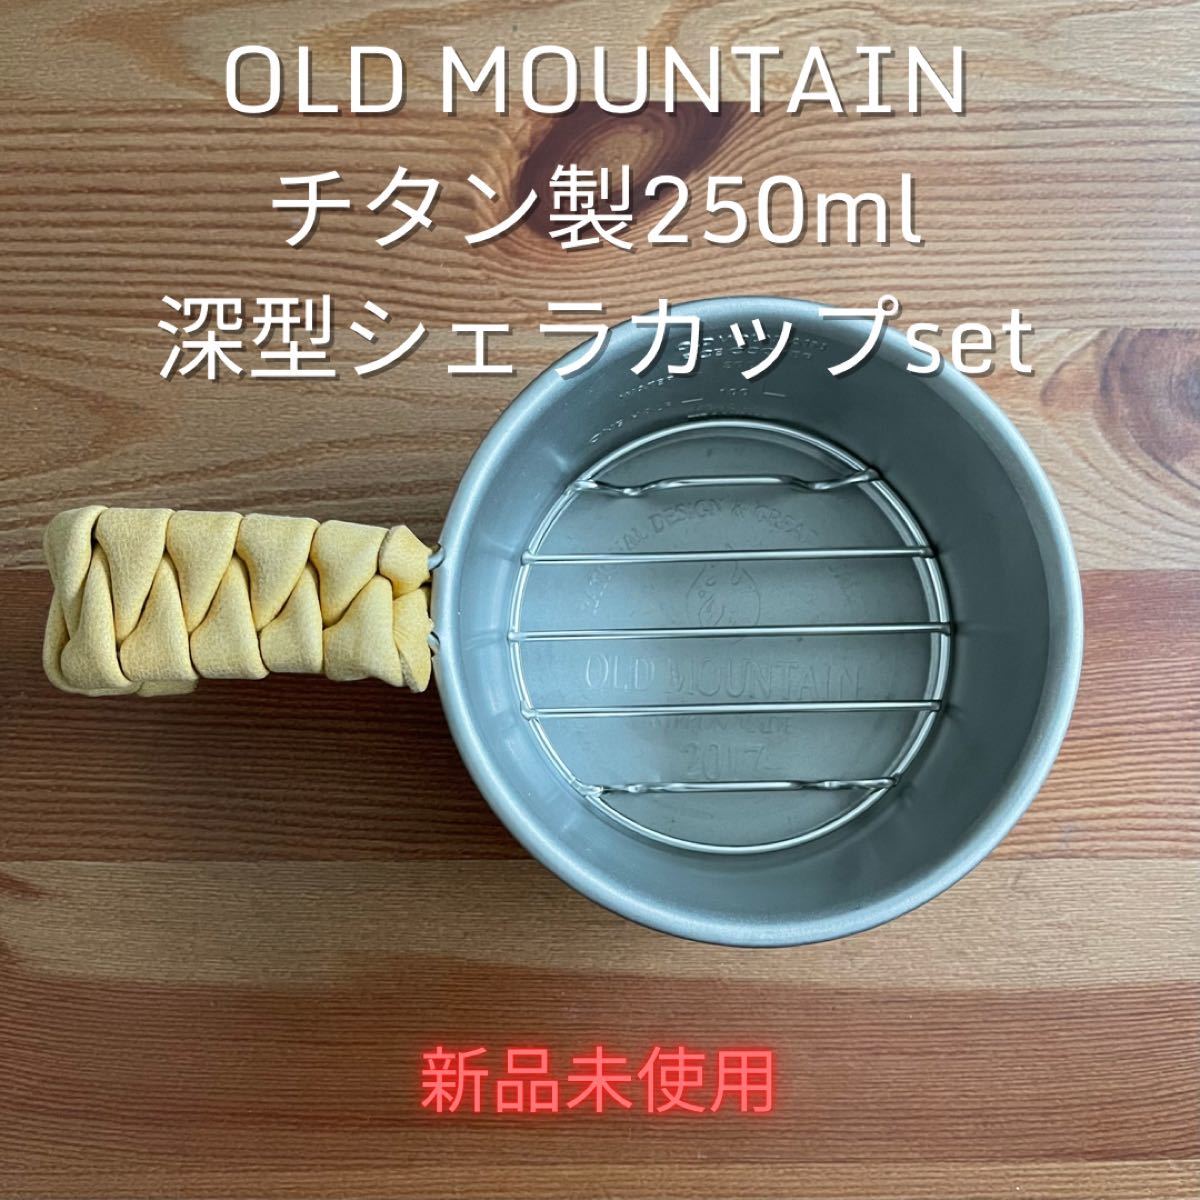 old mountain 深型シェラセット